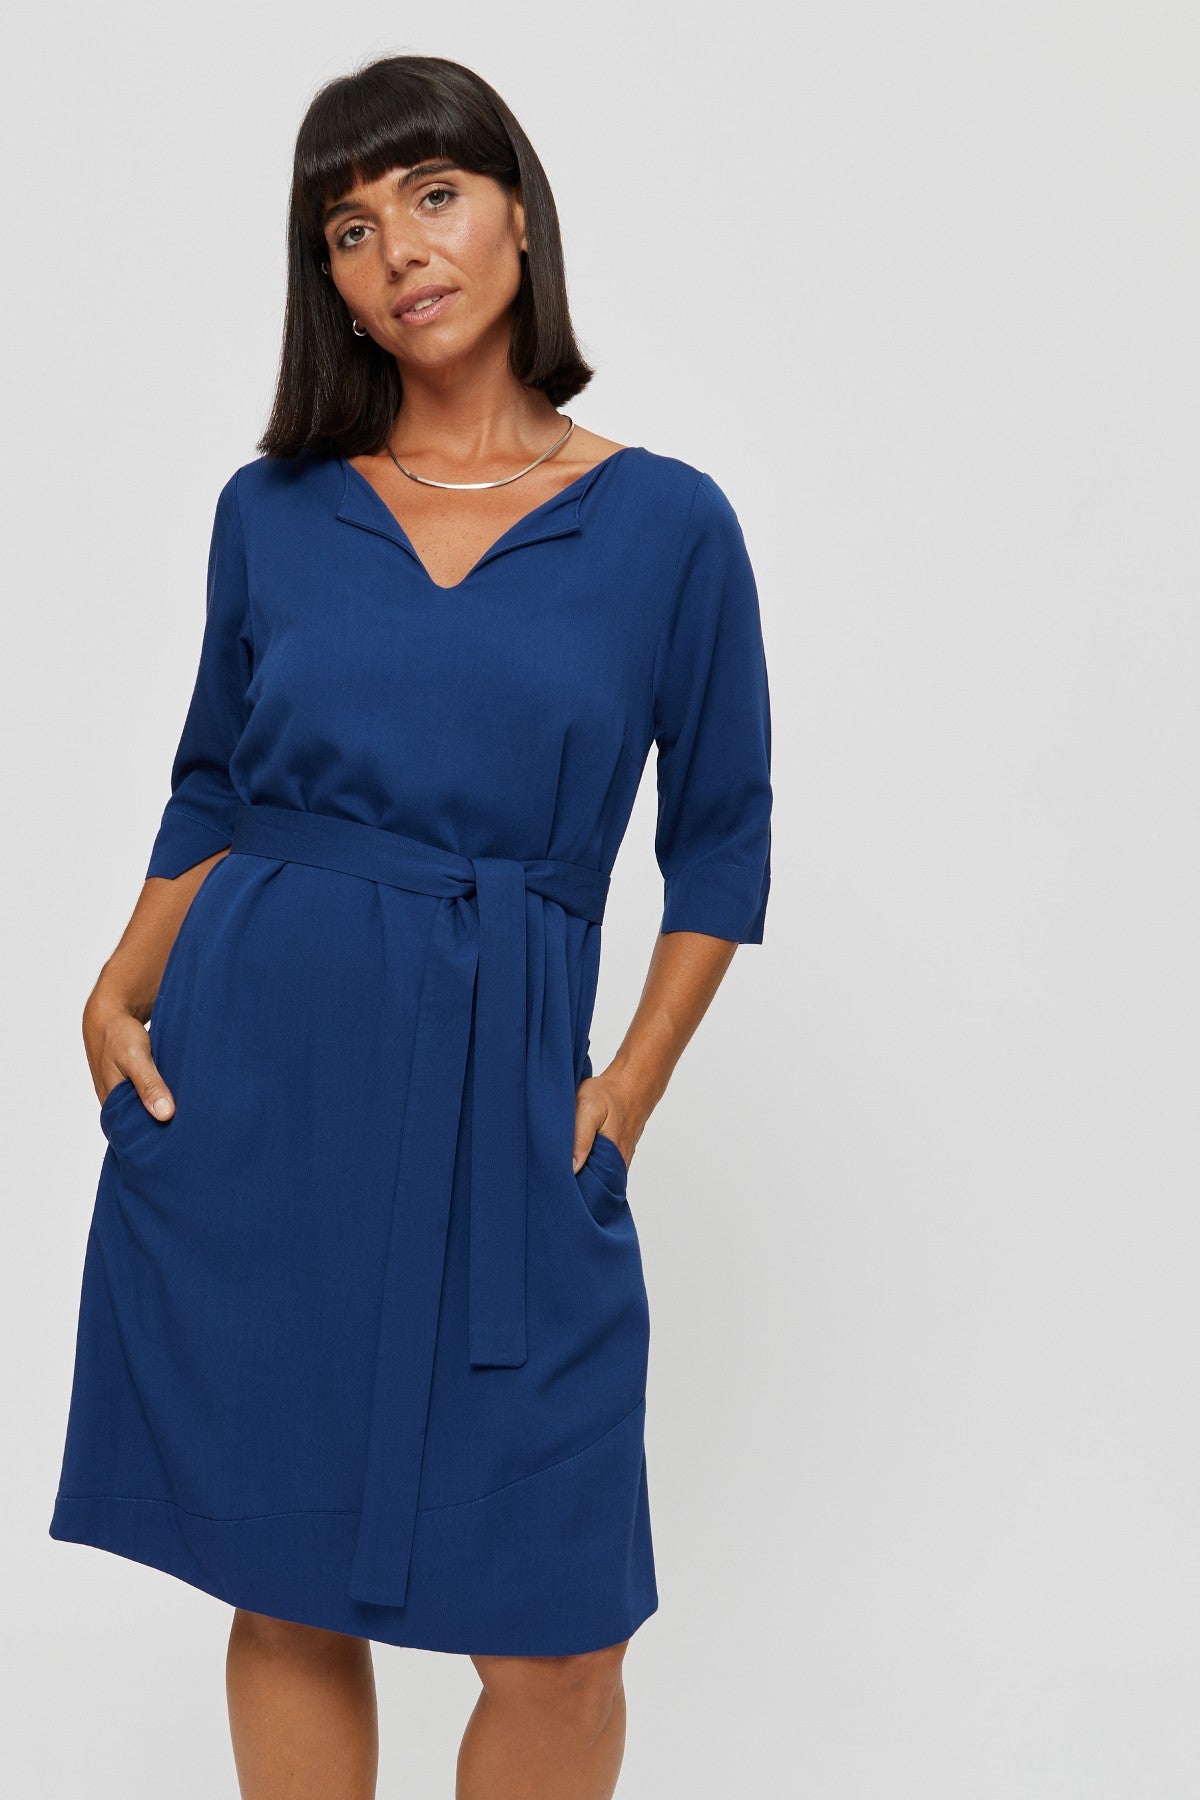 Damen Business Kleid CATHERINE in Blau - AYANI